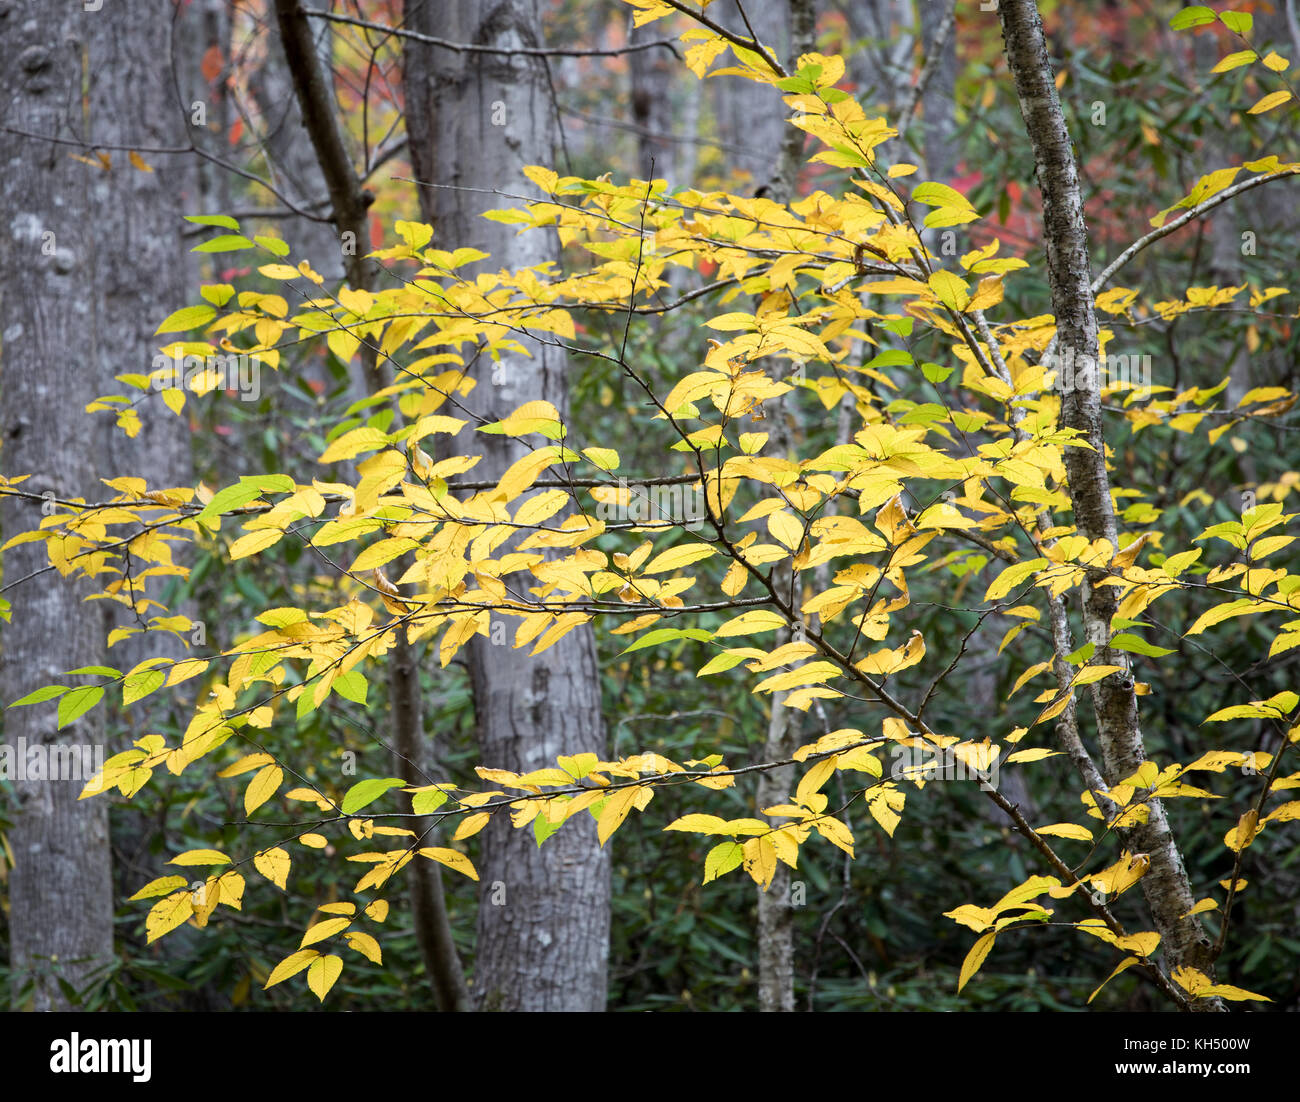 Le bouleau jaune (Betula alleghaniensis) pousse généralement dans la partie nord-est des États-Unis. son habitat ne s'étendent dans le sud-est des États-Unis à la plus haute altitude dans la région de tennesee, Caroline du Nord, et de la Géorgie. Comme plusieurs espèces de la famille, l'écorce va commencer à révéler un peeling nature quand il mûrit. Banque D'Images